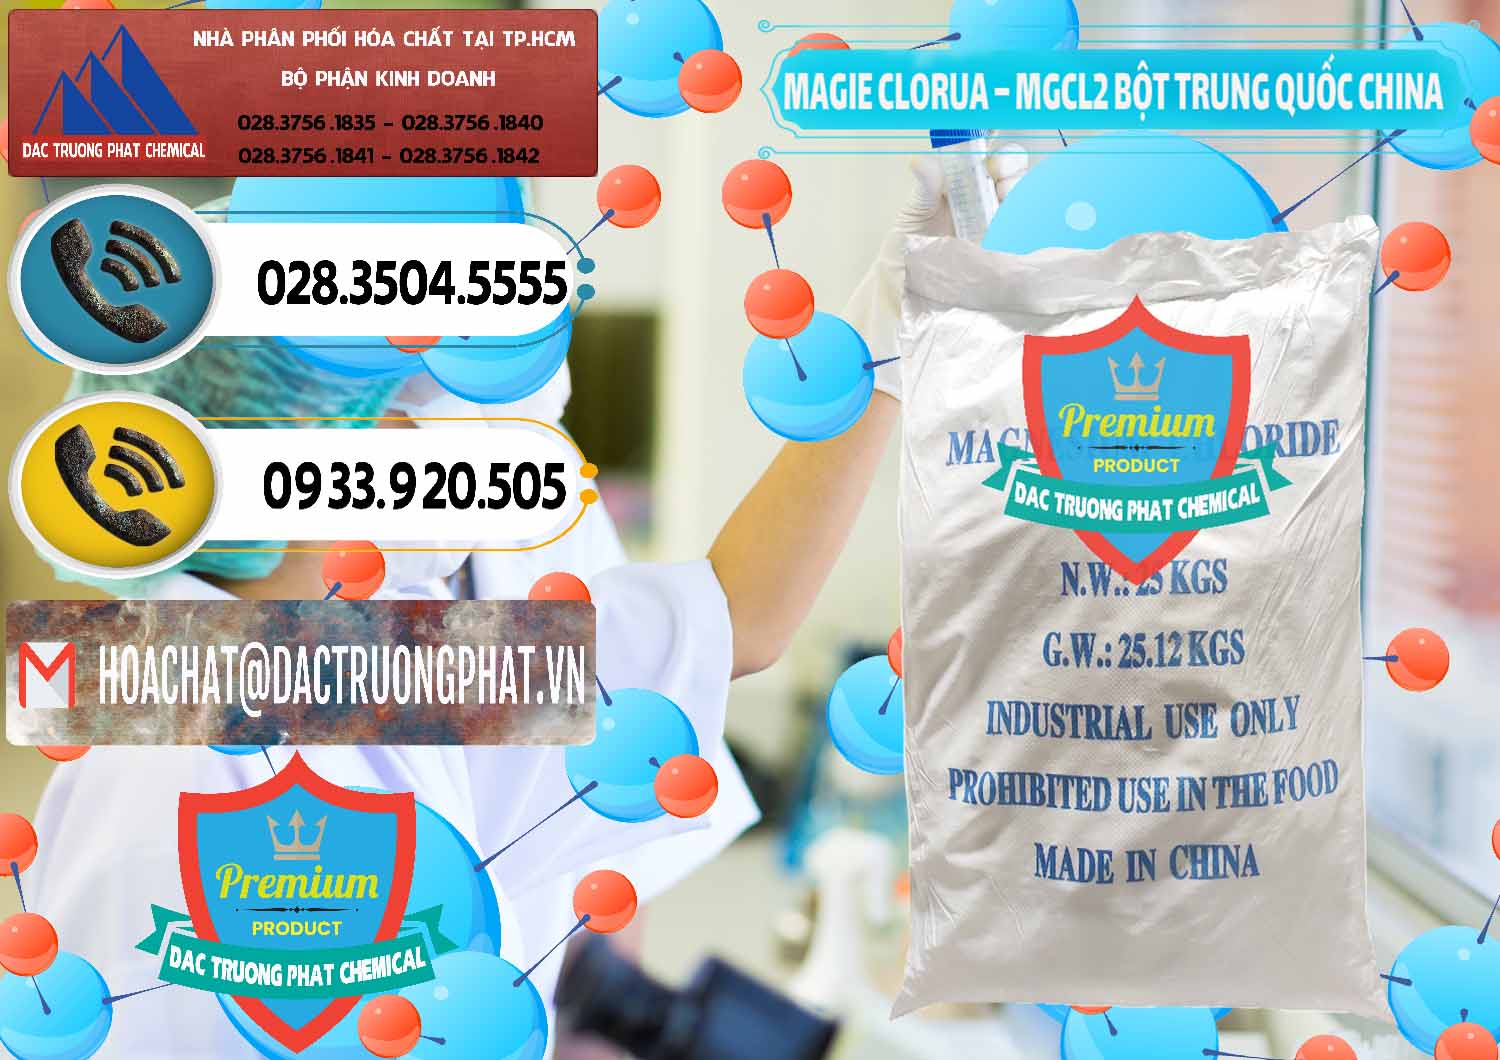 Chuyên bán - cung ứng Magie Clorua – MGCL2 96% Dạng Bột Bao Chữ Xanh Trung Quốc China - 0207 - Nơi nhập khẩu - cung cấp hóa chất tại TP.HCM - hoachatdetnhuom.vn